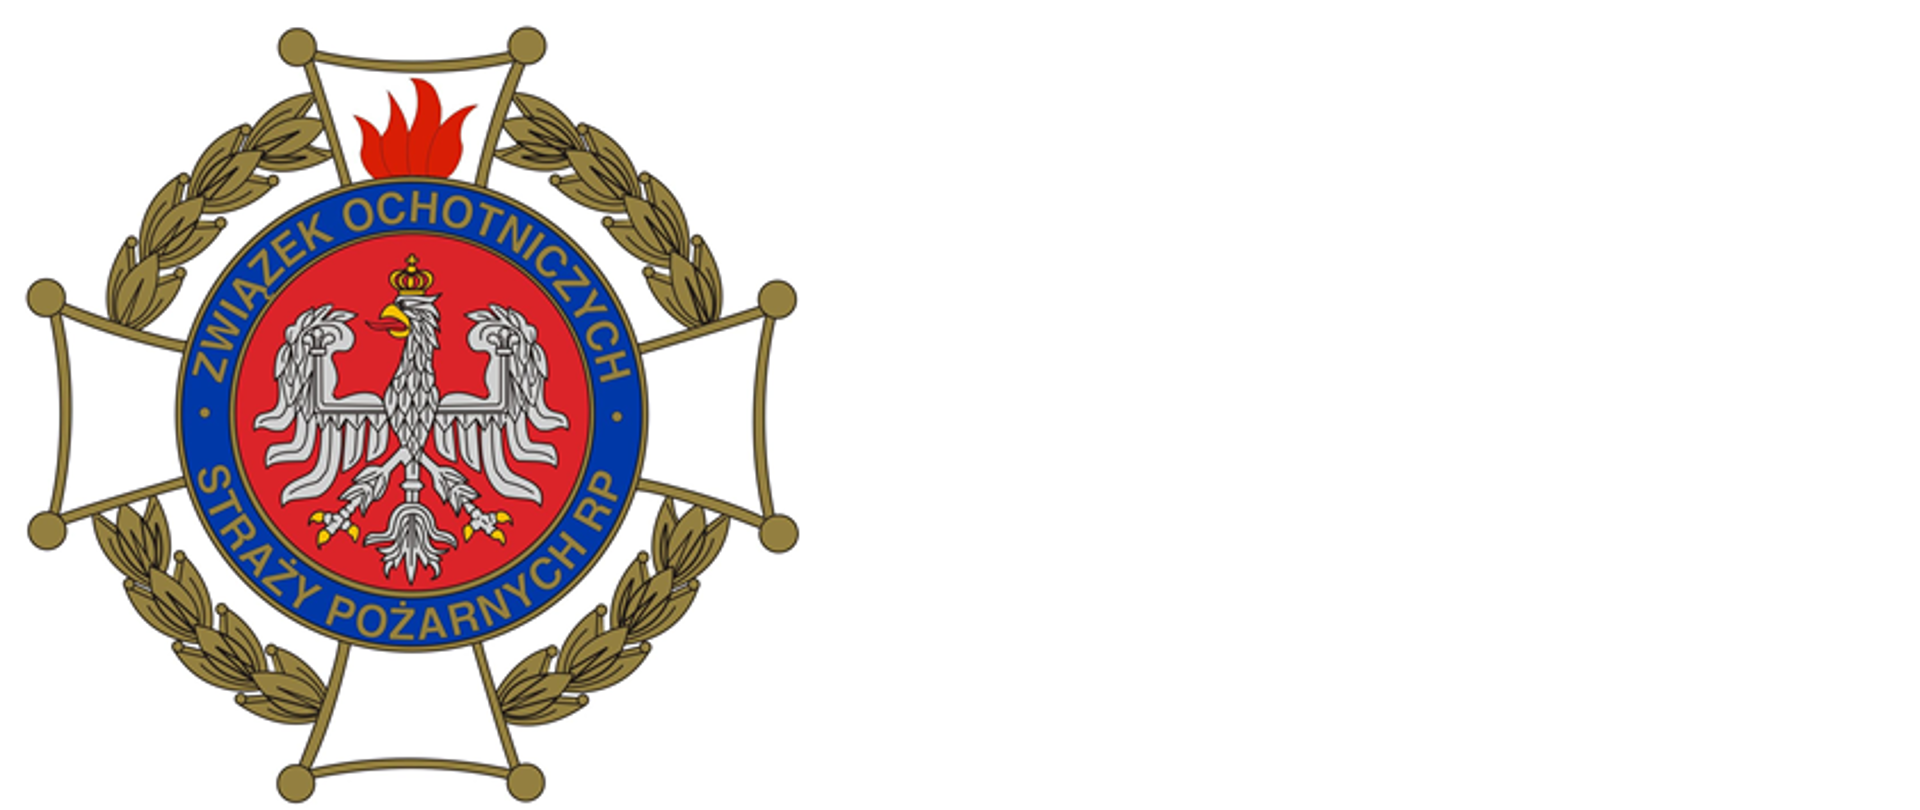 Zdjęcie przedstawia krzyż Związku Ochotniczych Straży Pożarnych. W środku znaku znajduje się biały orzeł w korownie. W jego obwodzie napisany jest napis Związek Ochotniczych Straży Pożarnych RP.